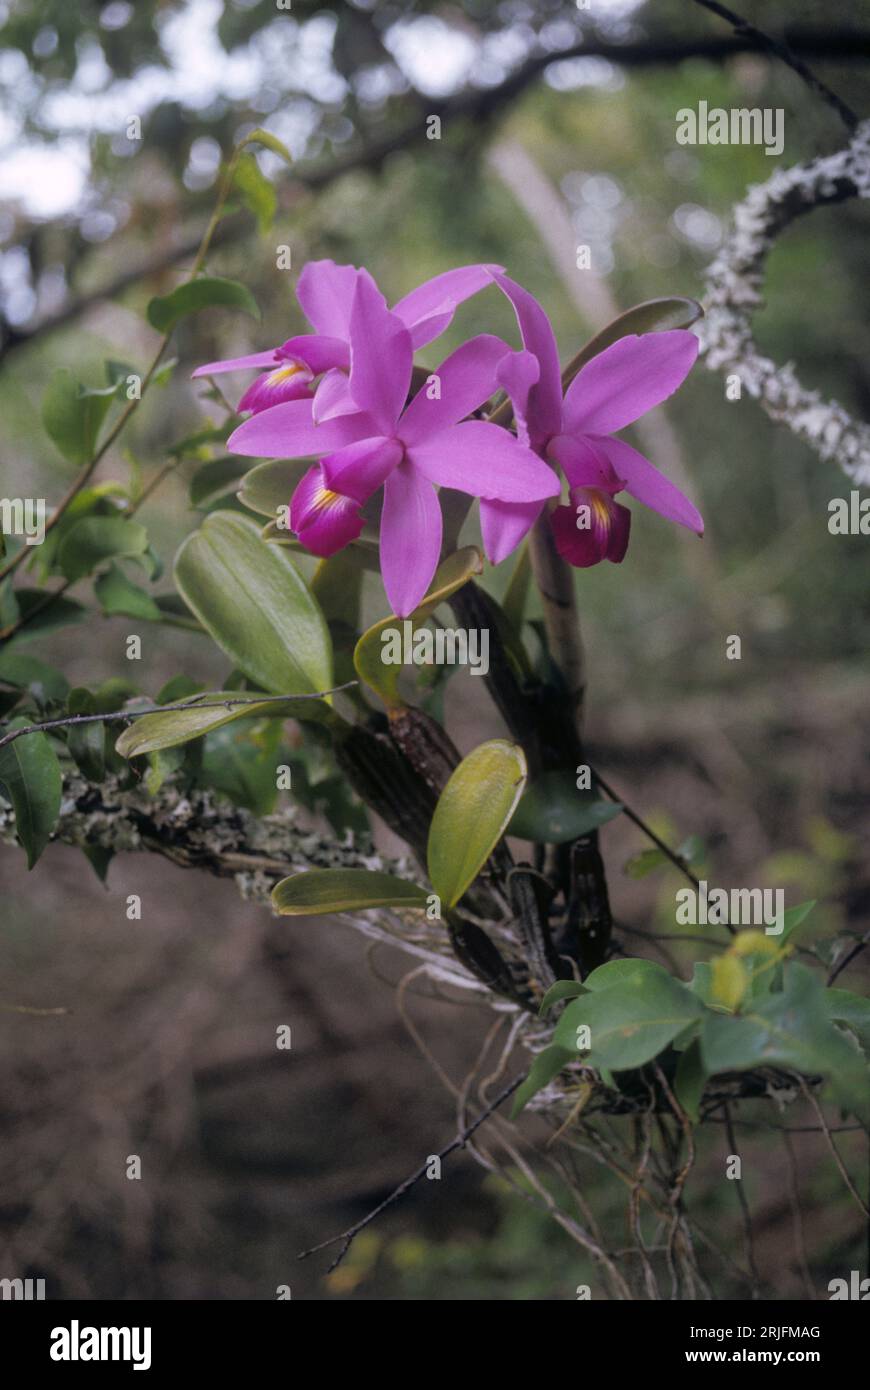 Cattleya violacea (Orchidaceae), orchidée épiphyte dans la galerie forestière, biome de savane, Venezuela. Banque D'Images